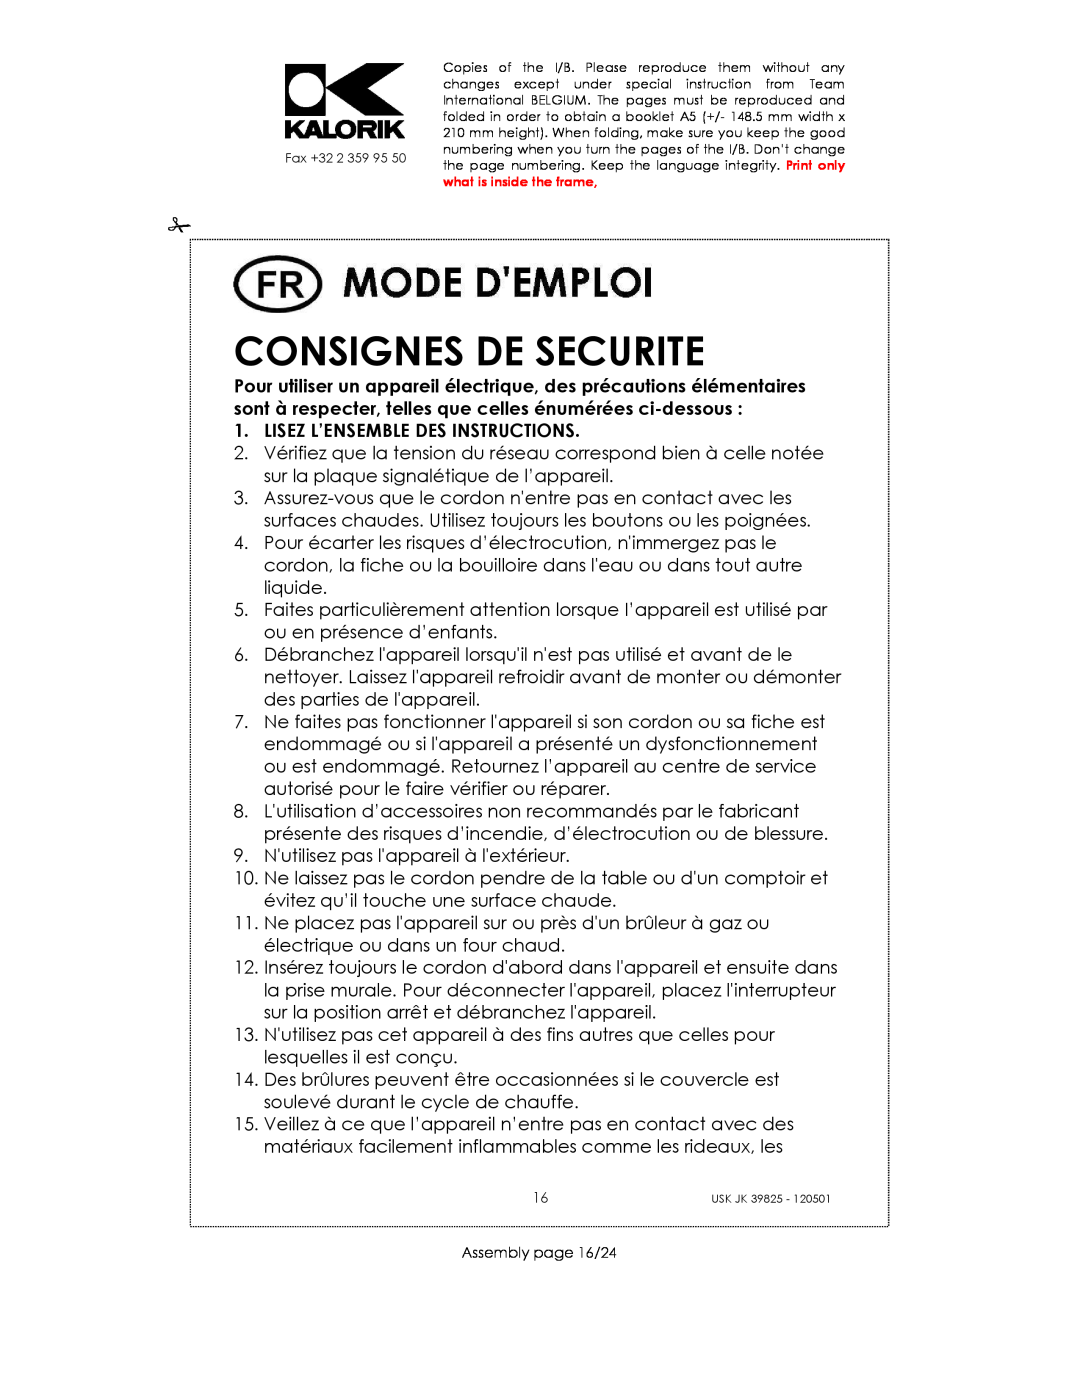 Kalorik JK 39825 manual Consignes De Securite, Lisez L’Ensemble Des Instructions 